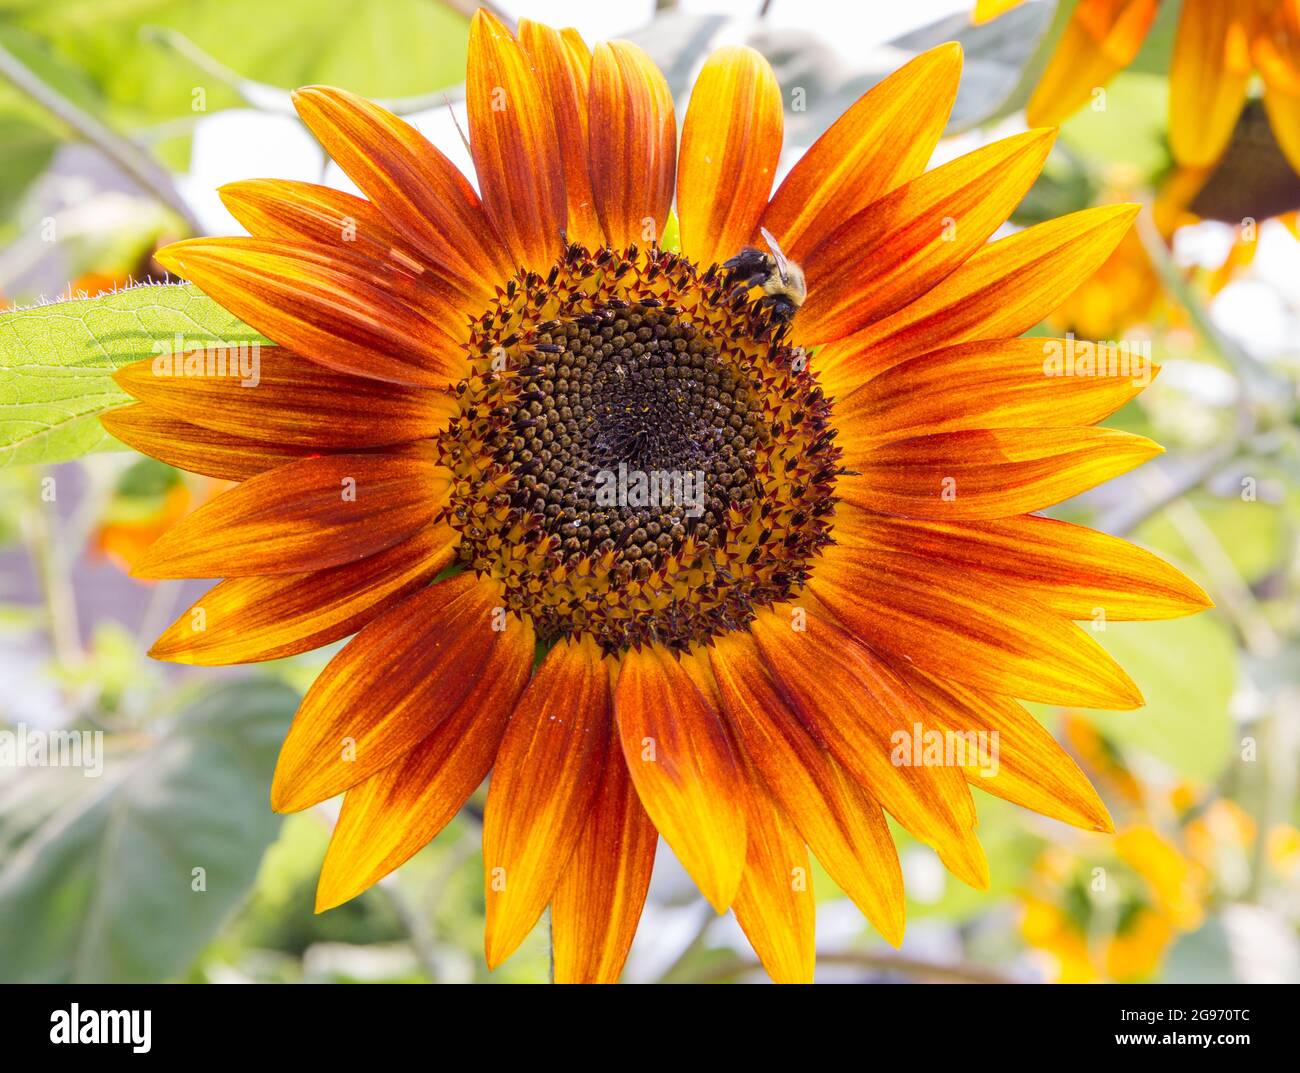 Eine große Sonnenblume mit orangefarbenen Blütenblättern beherbergt eine gewöhnliche östliche Hummel bei strahlendem Sonnenschein. Stockfoto